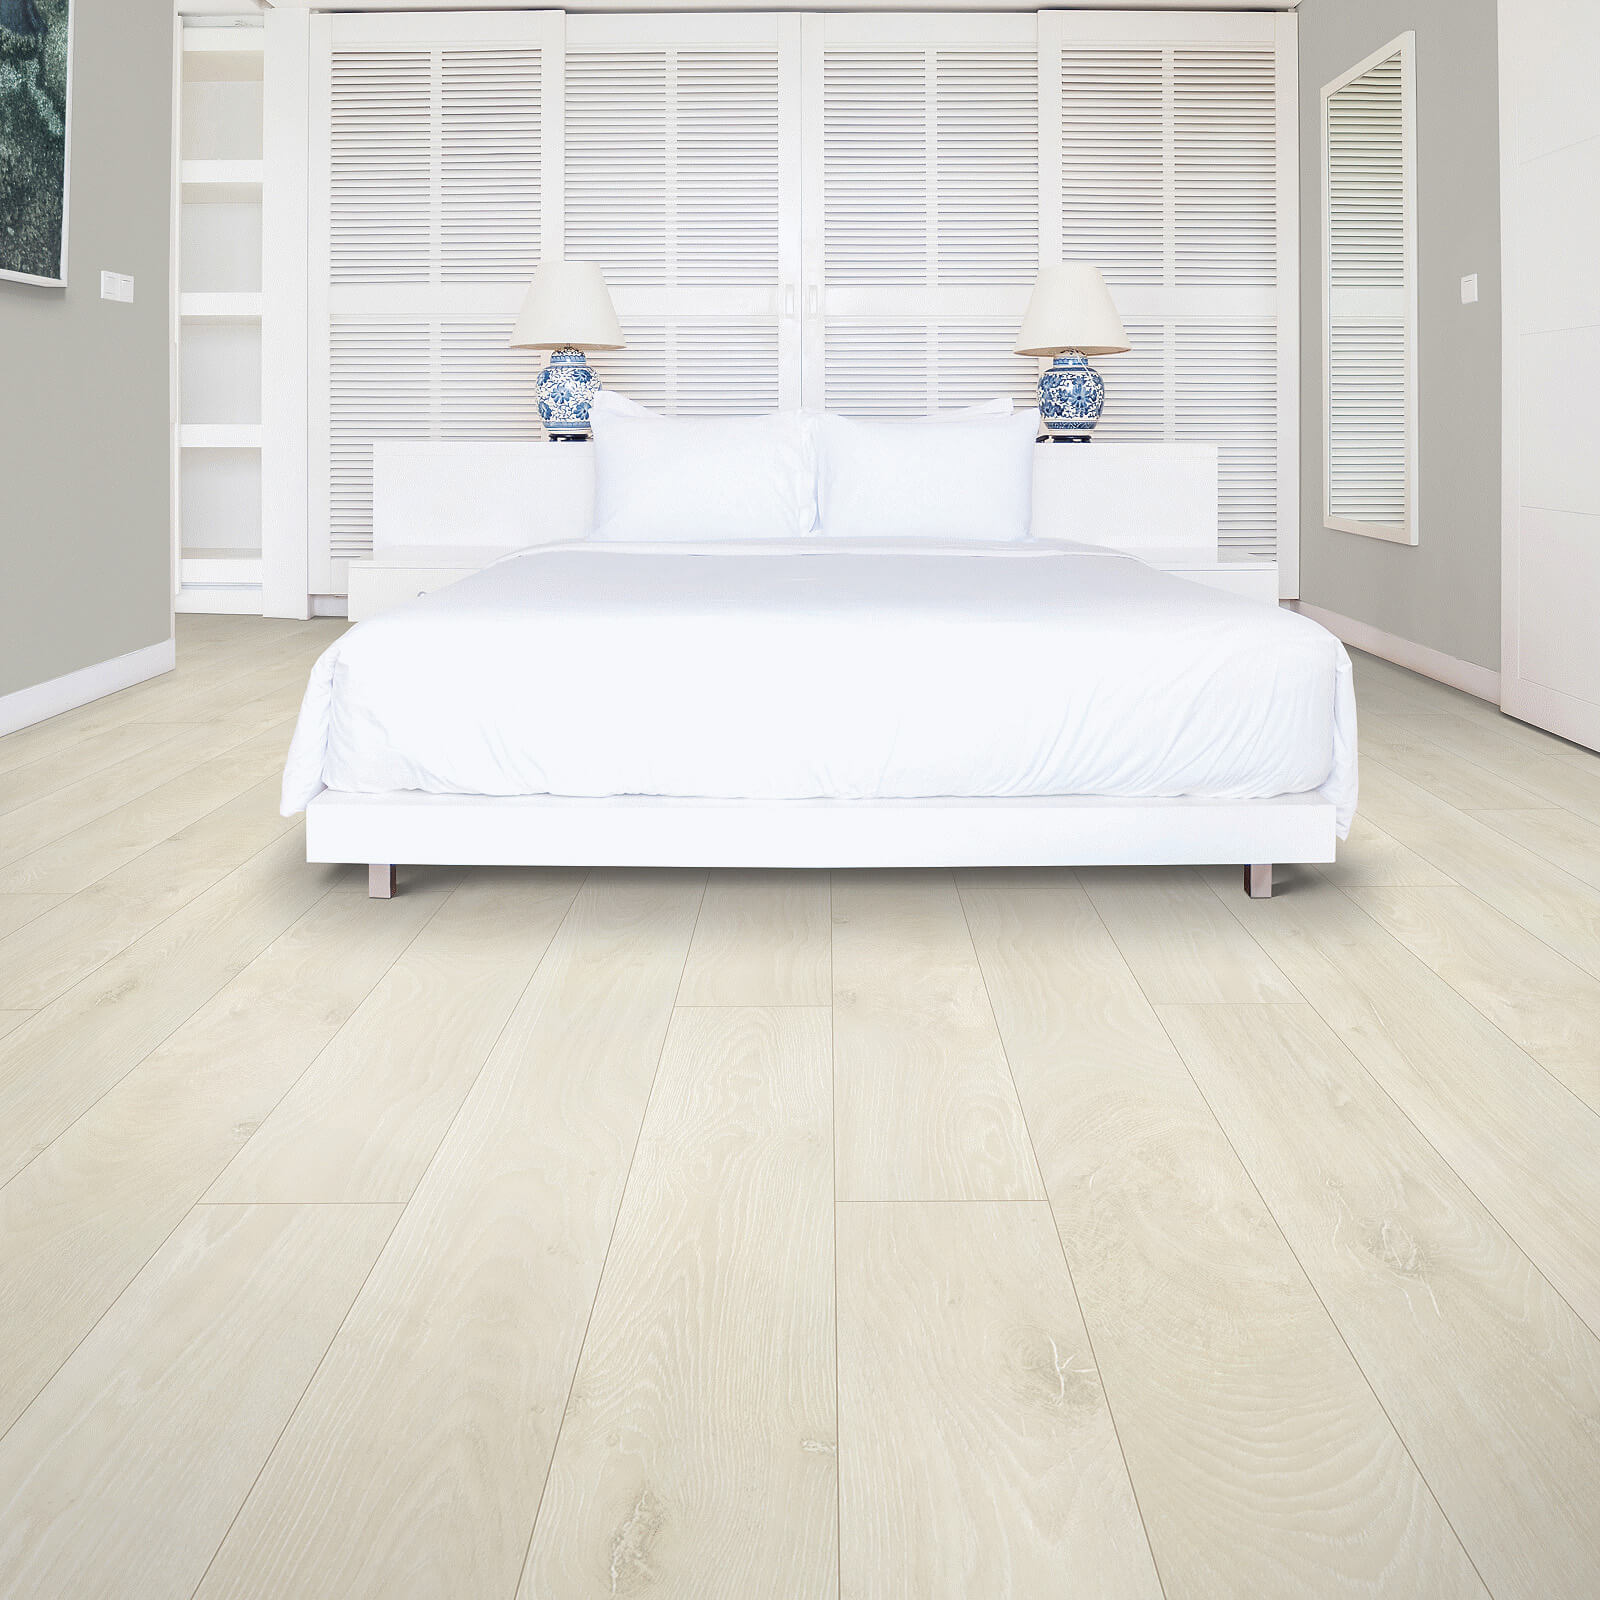 Lavish master bedroom | Mills Floor Covering